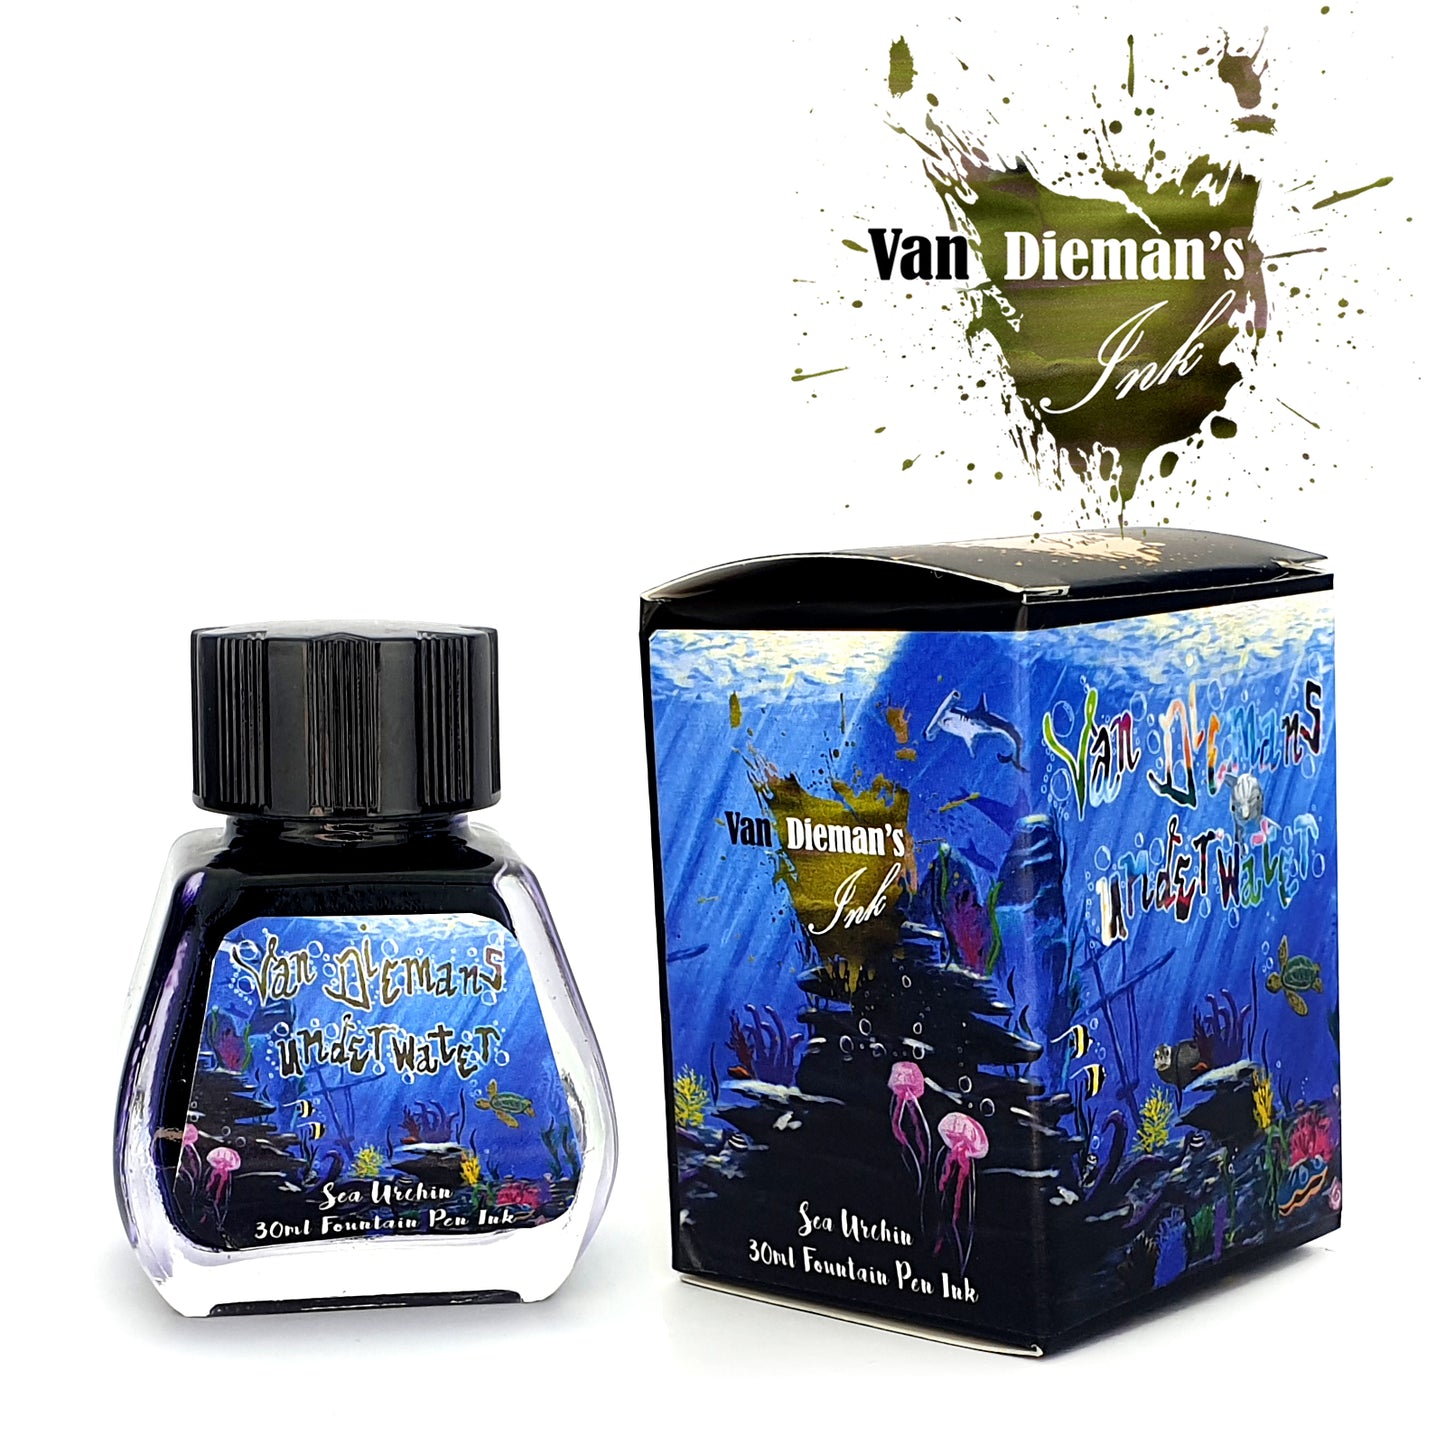 Van Dieman's Underwater - Sea Urchin - Fountain Pen Ink